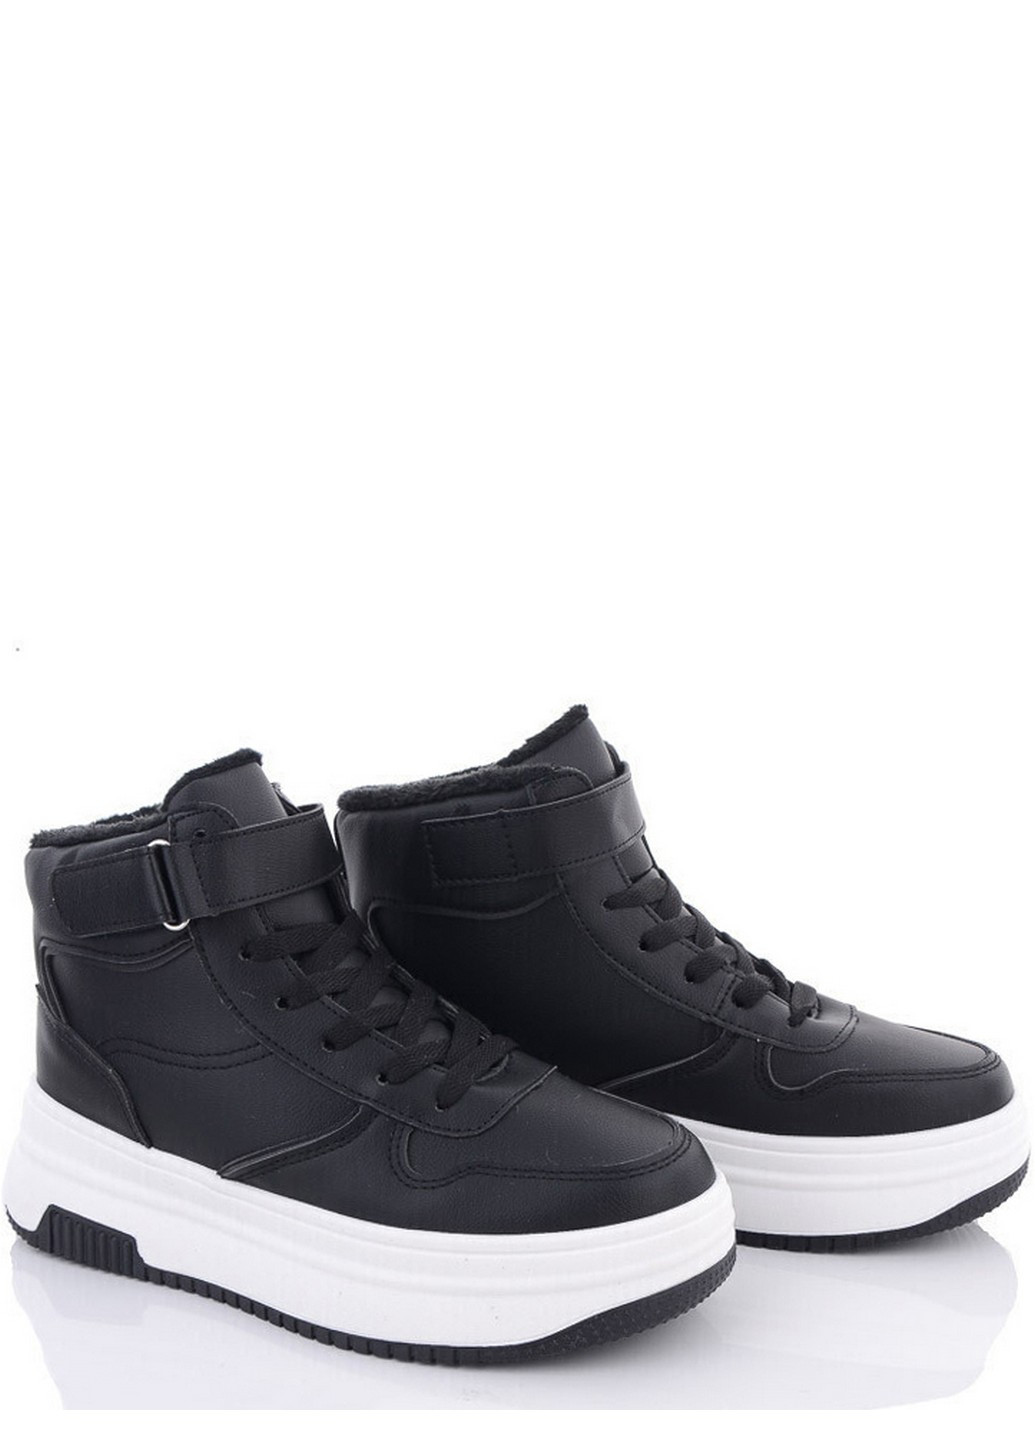 Черно-белые зимние зимние ботинки m04-4 Stilli